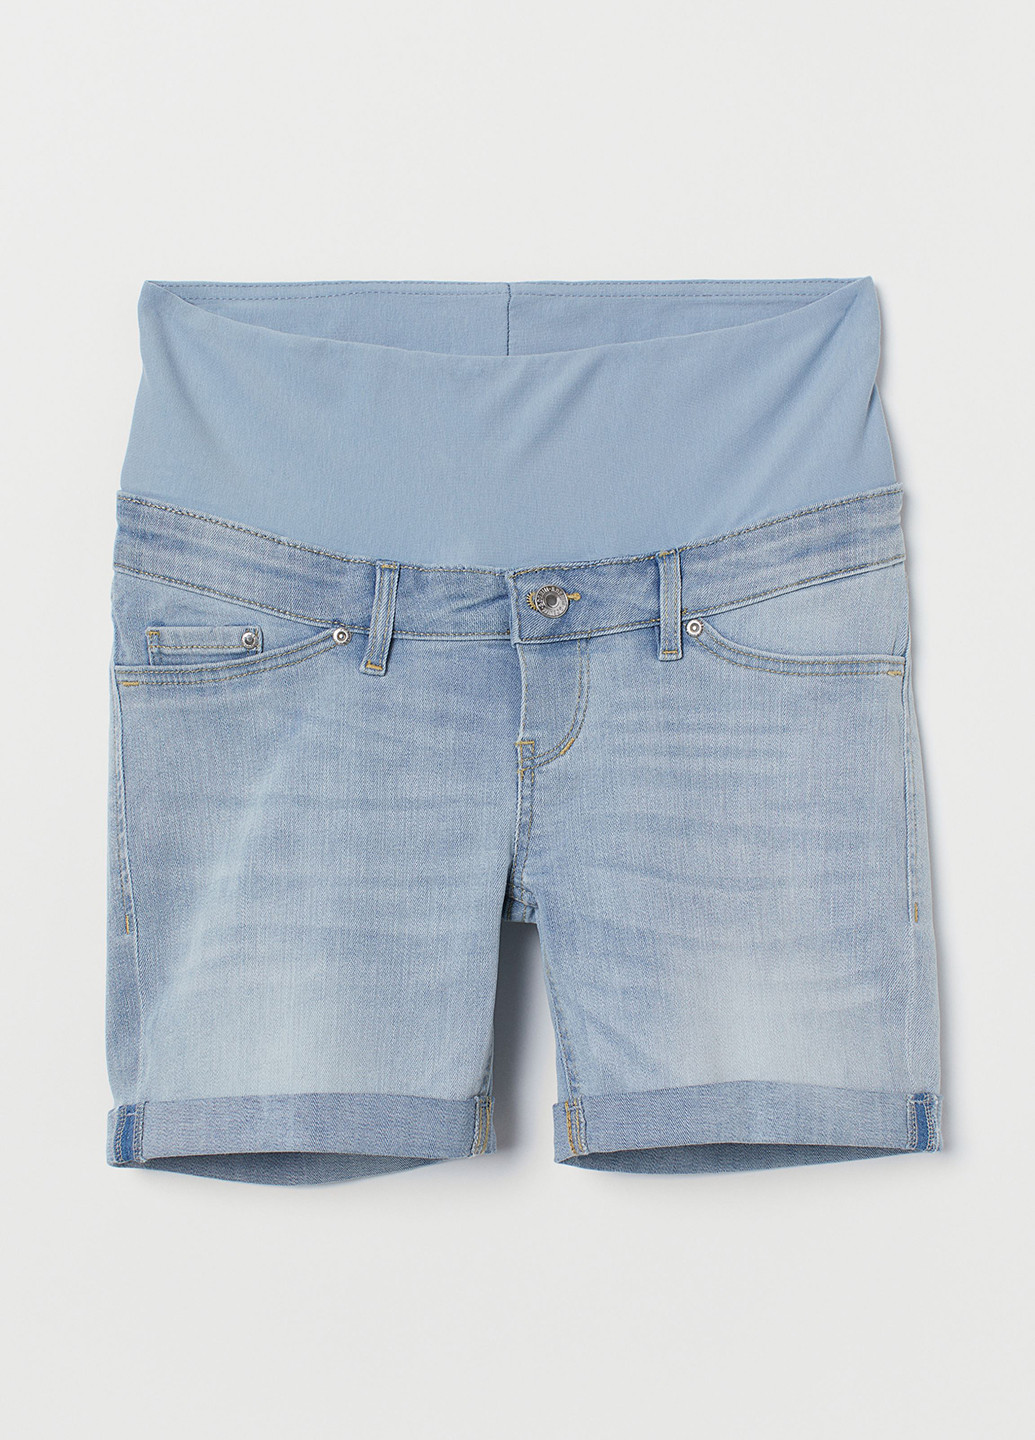 Шорты для беременных H&M однотонные светло-голубые джинсовые хлопок